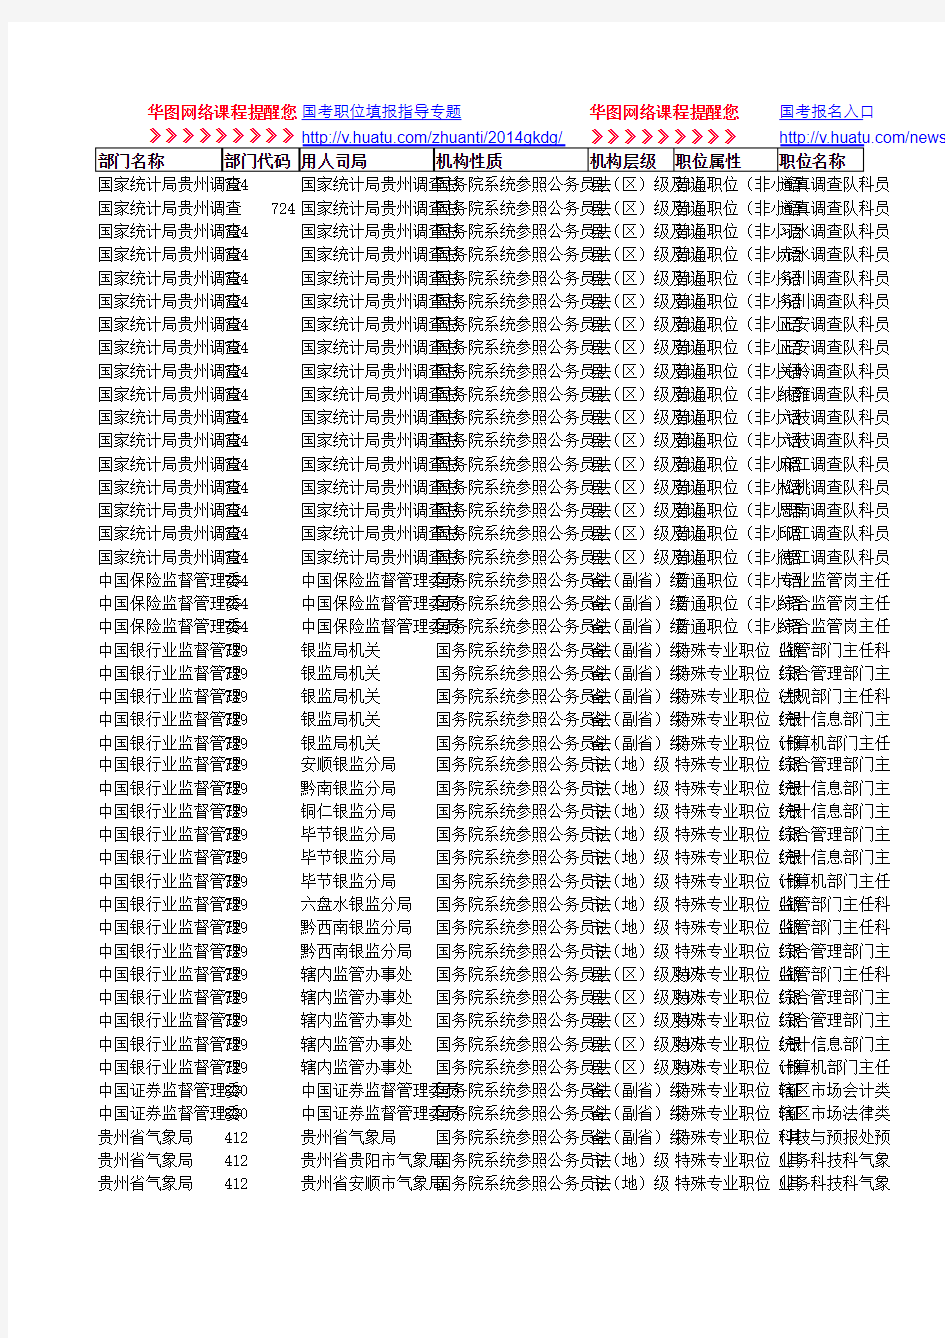 国考2014年职位表-贵州